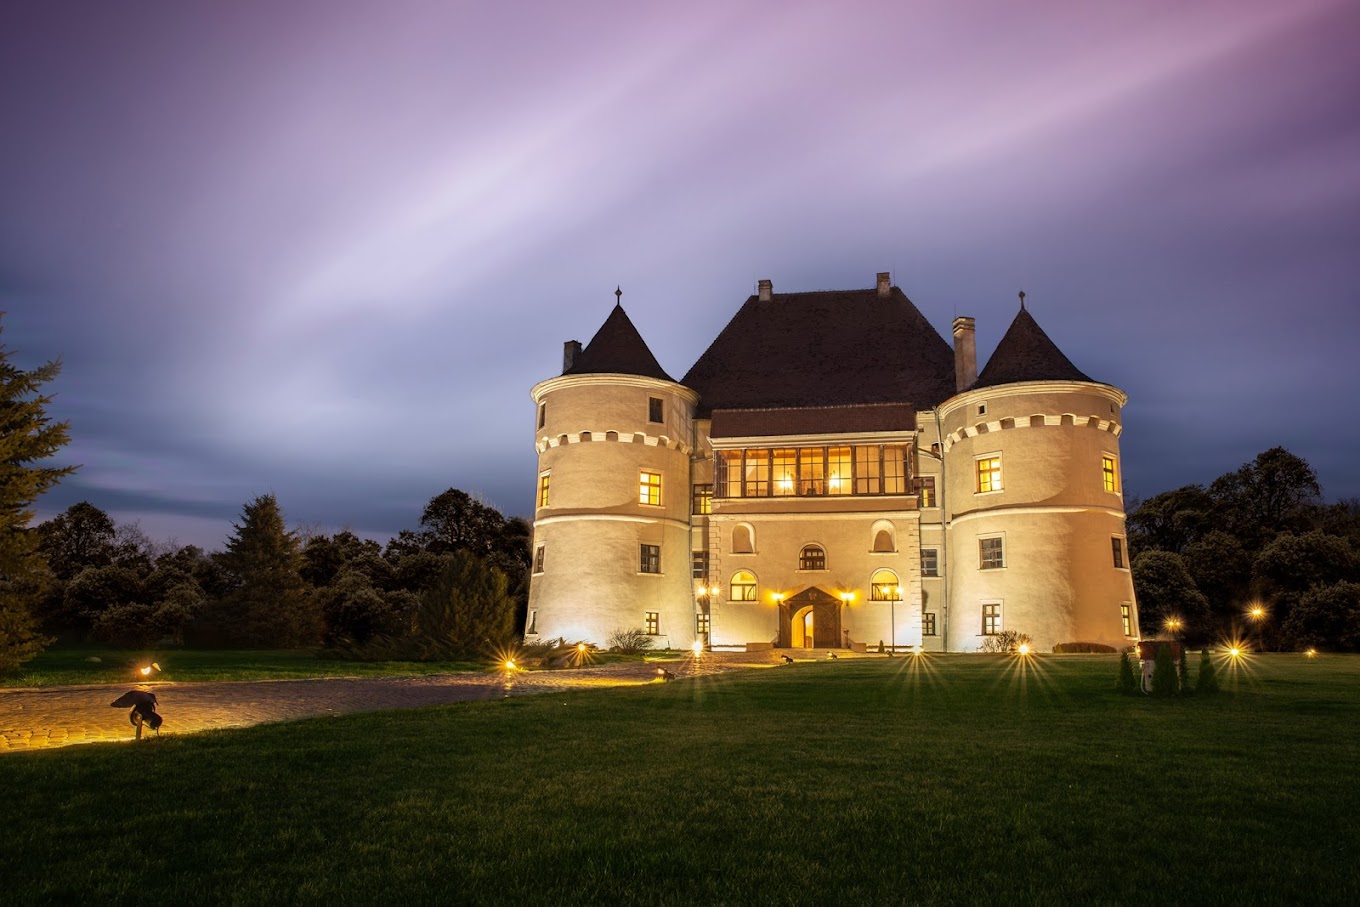 Castelul Bethlen-Haller fotografiat din departare, la lasarea serii, cu luminile aprinse - una din destinații romantice din România